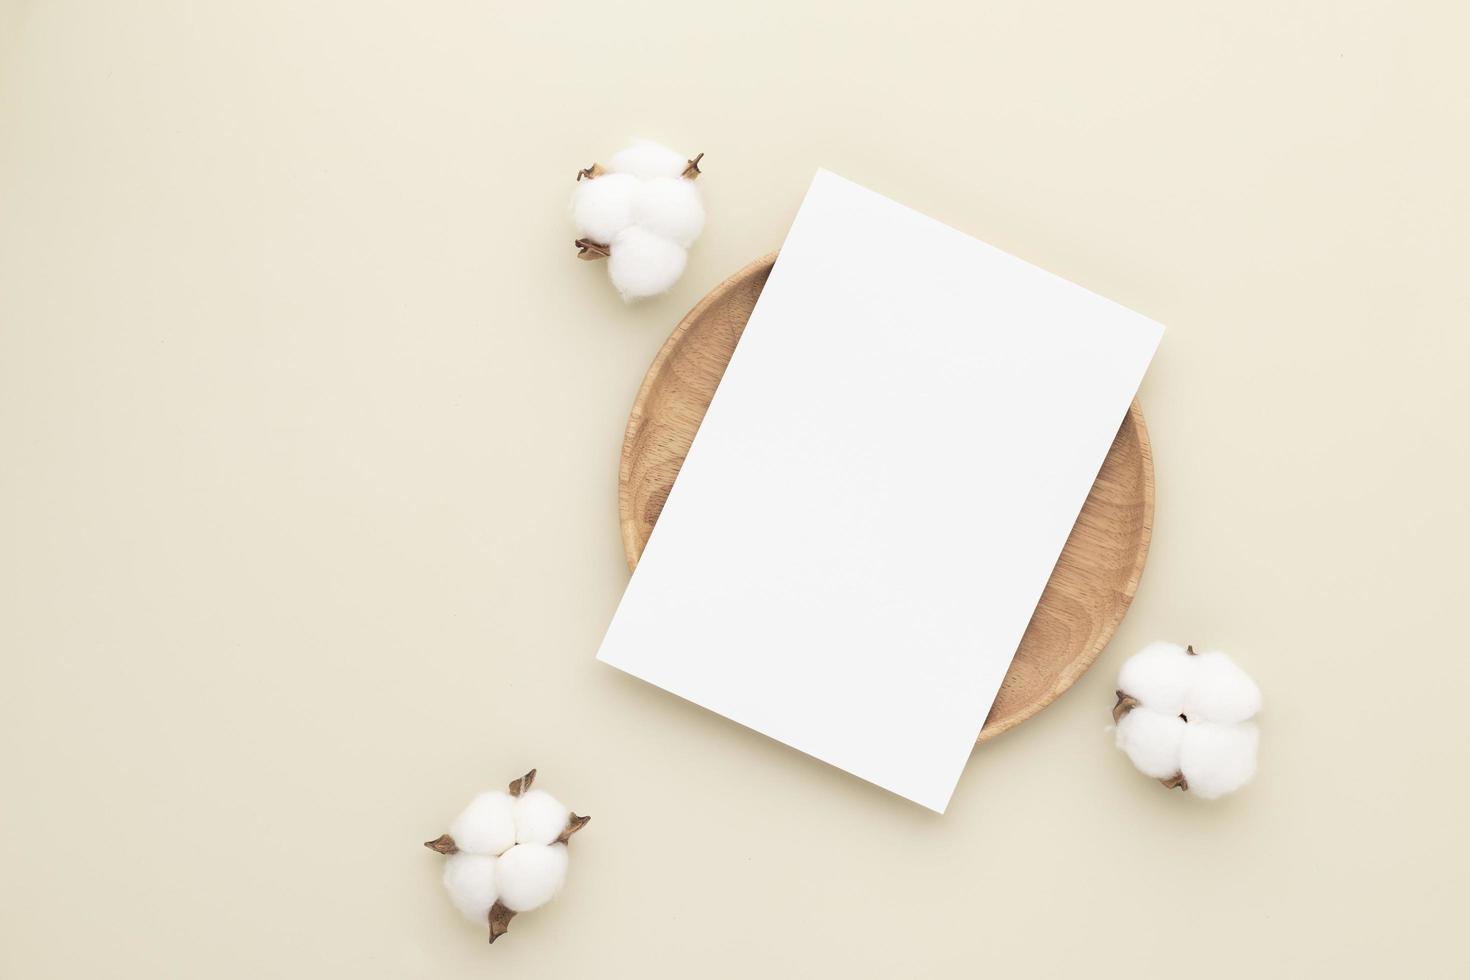 tarjetas de papel en blanco, maqueta con una flor de algodón en un plato de madera, fondo beige, composición mínima de lugar de trabajo beige, plano, maqueta foto